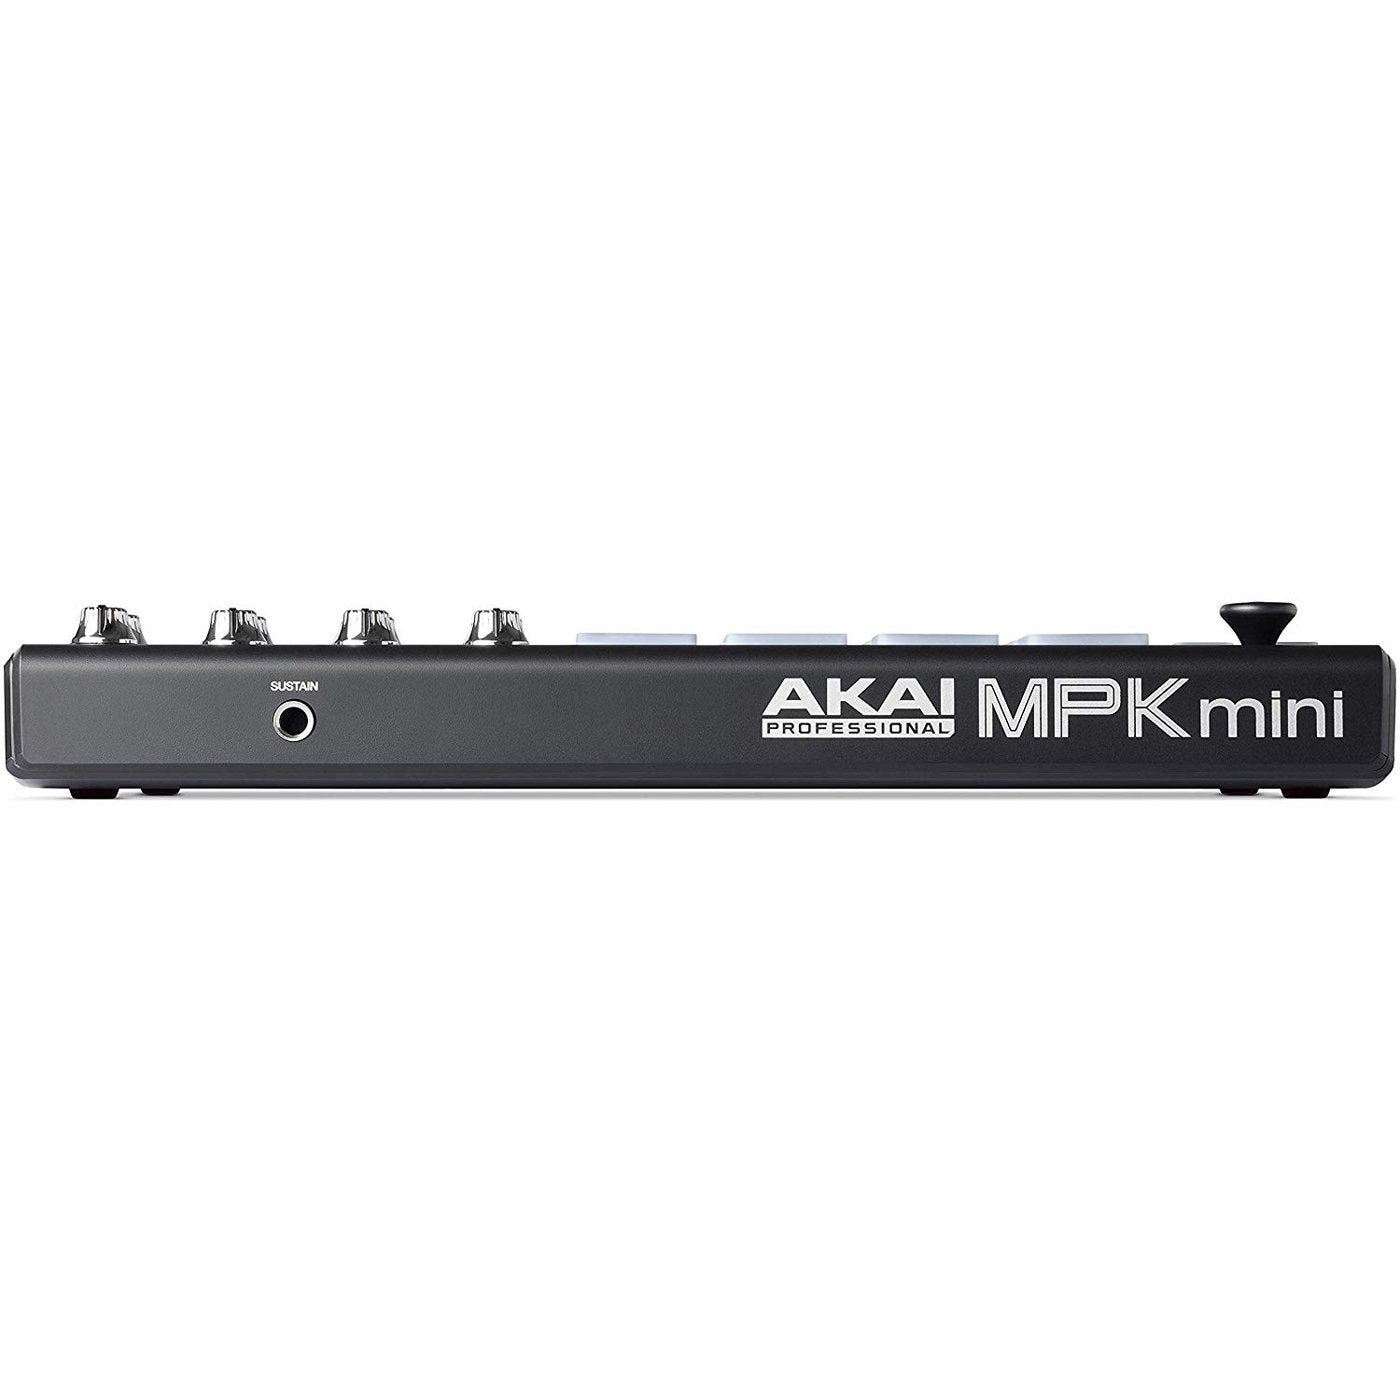 MPK Mini MK3 MIDI Controller